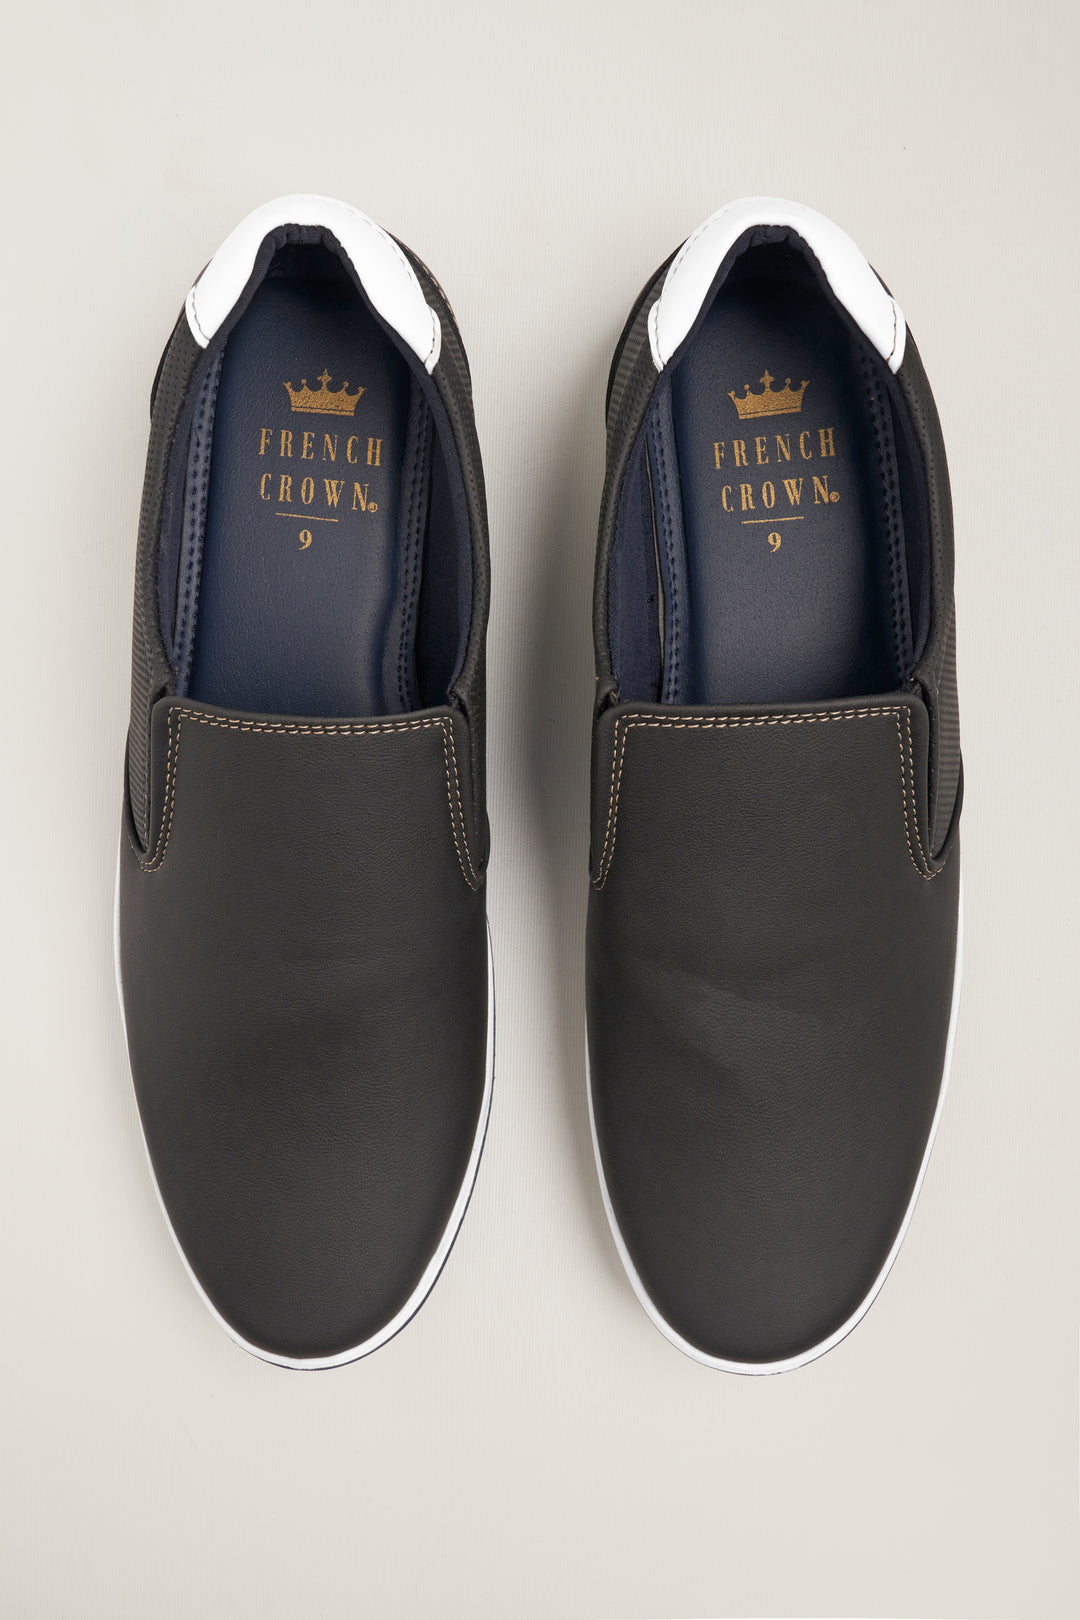 Brown loafer shoes for men